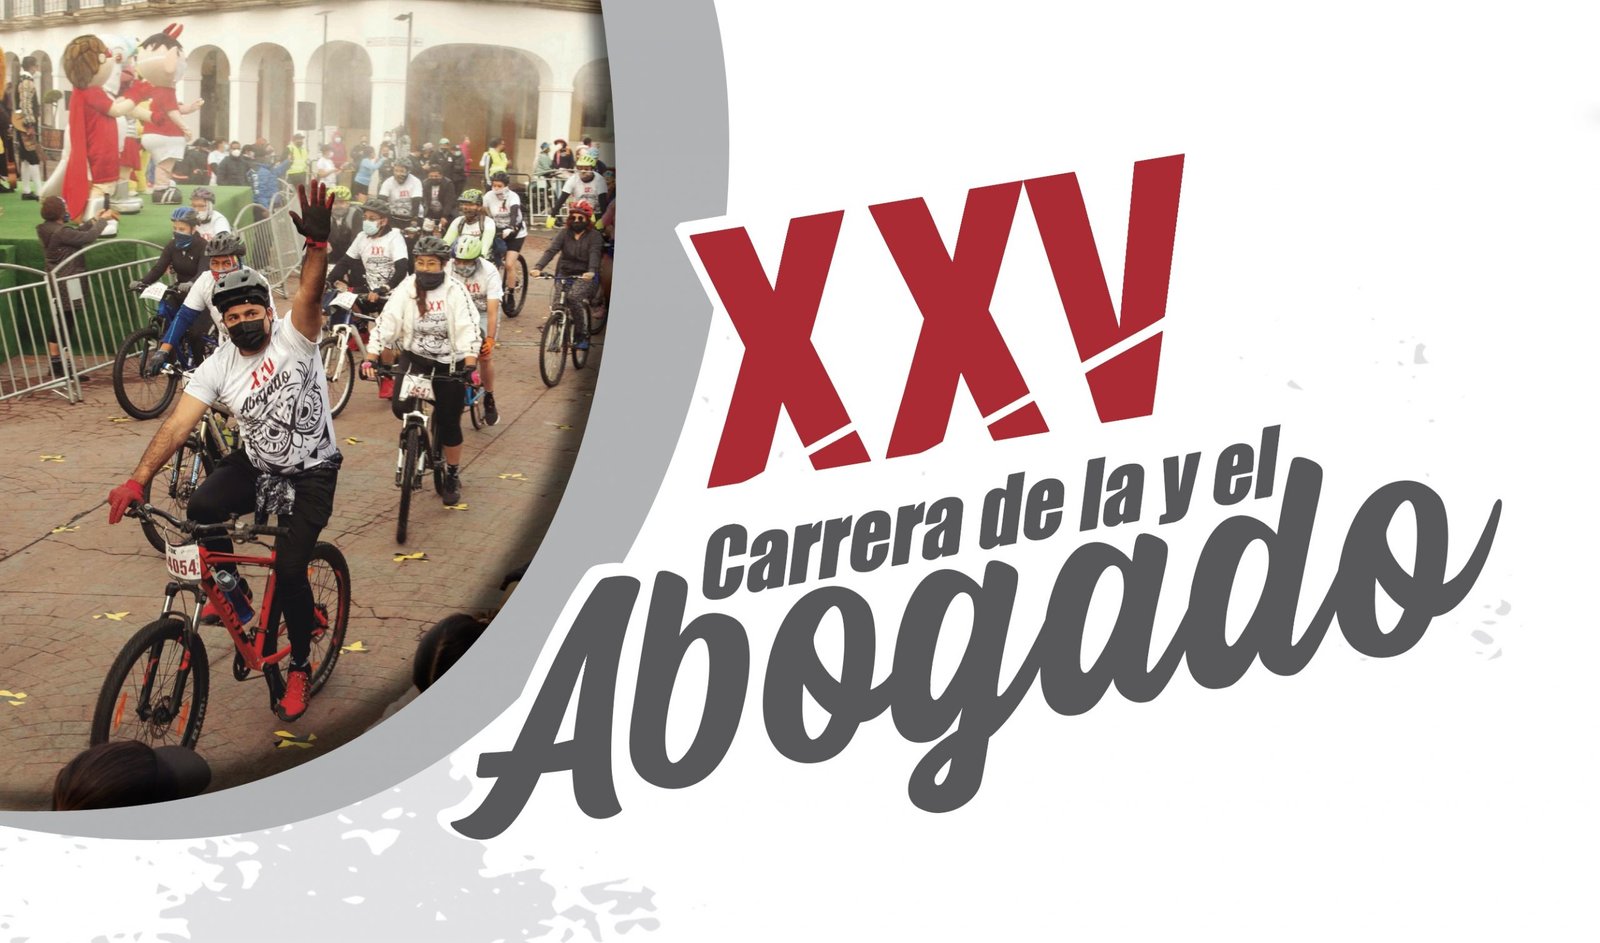 Reunió a 2,600  competidores en Texcoco y Toluca